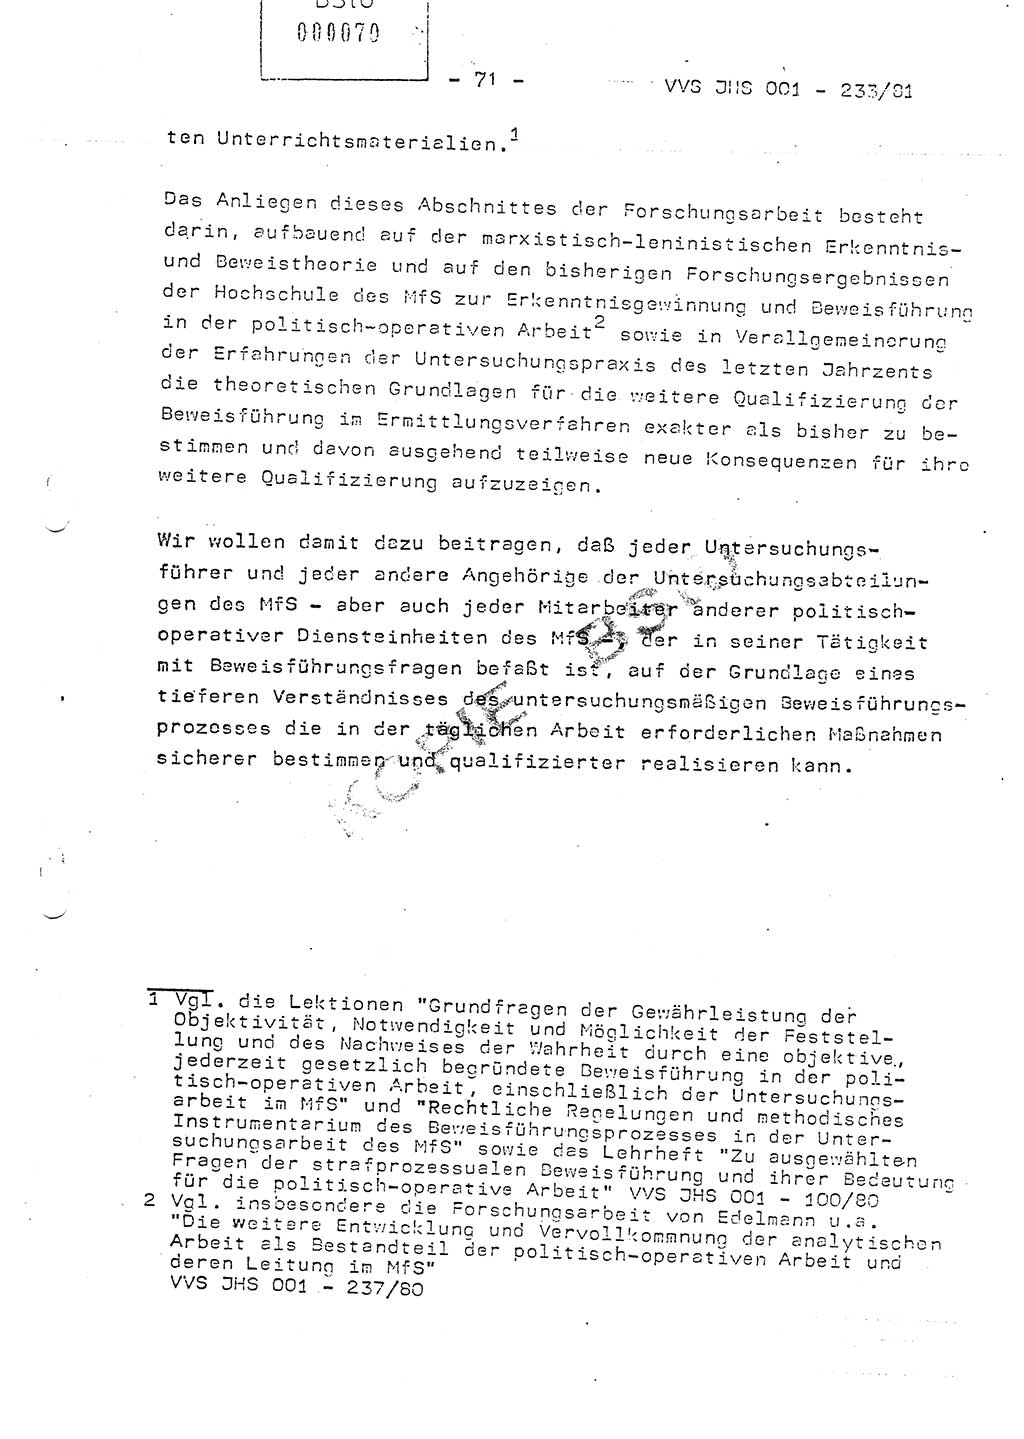 Dissertation Oberstleutnant Horst Zank (JHS), Oberstleutnant Dr. Karl-Heinz Knoblauch (JHS), Oberstleutnant Gustav-Adolf Kowalewski (HA Ⅸ), Oberstleutnant Wolfgang Plötner (HA Ⅸ), Ministerium für Staatssicherheit (MfS) [Deutsche Demokratische Republik (DDR)], Juristische Hochschule (JHS), Vertrauliche Verschlußsache (VVS) o001-233/81, Potsdam 1981, Blatt 71 (Diss. MfS DDR JHS VVS o001-233/81 1981, Bl. 71)